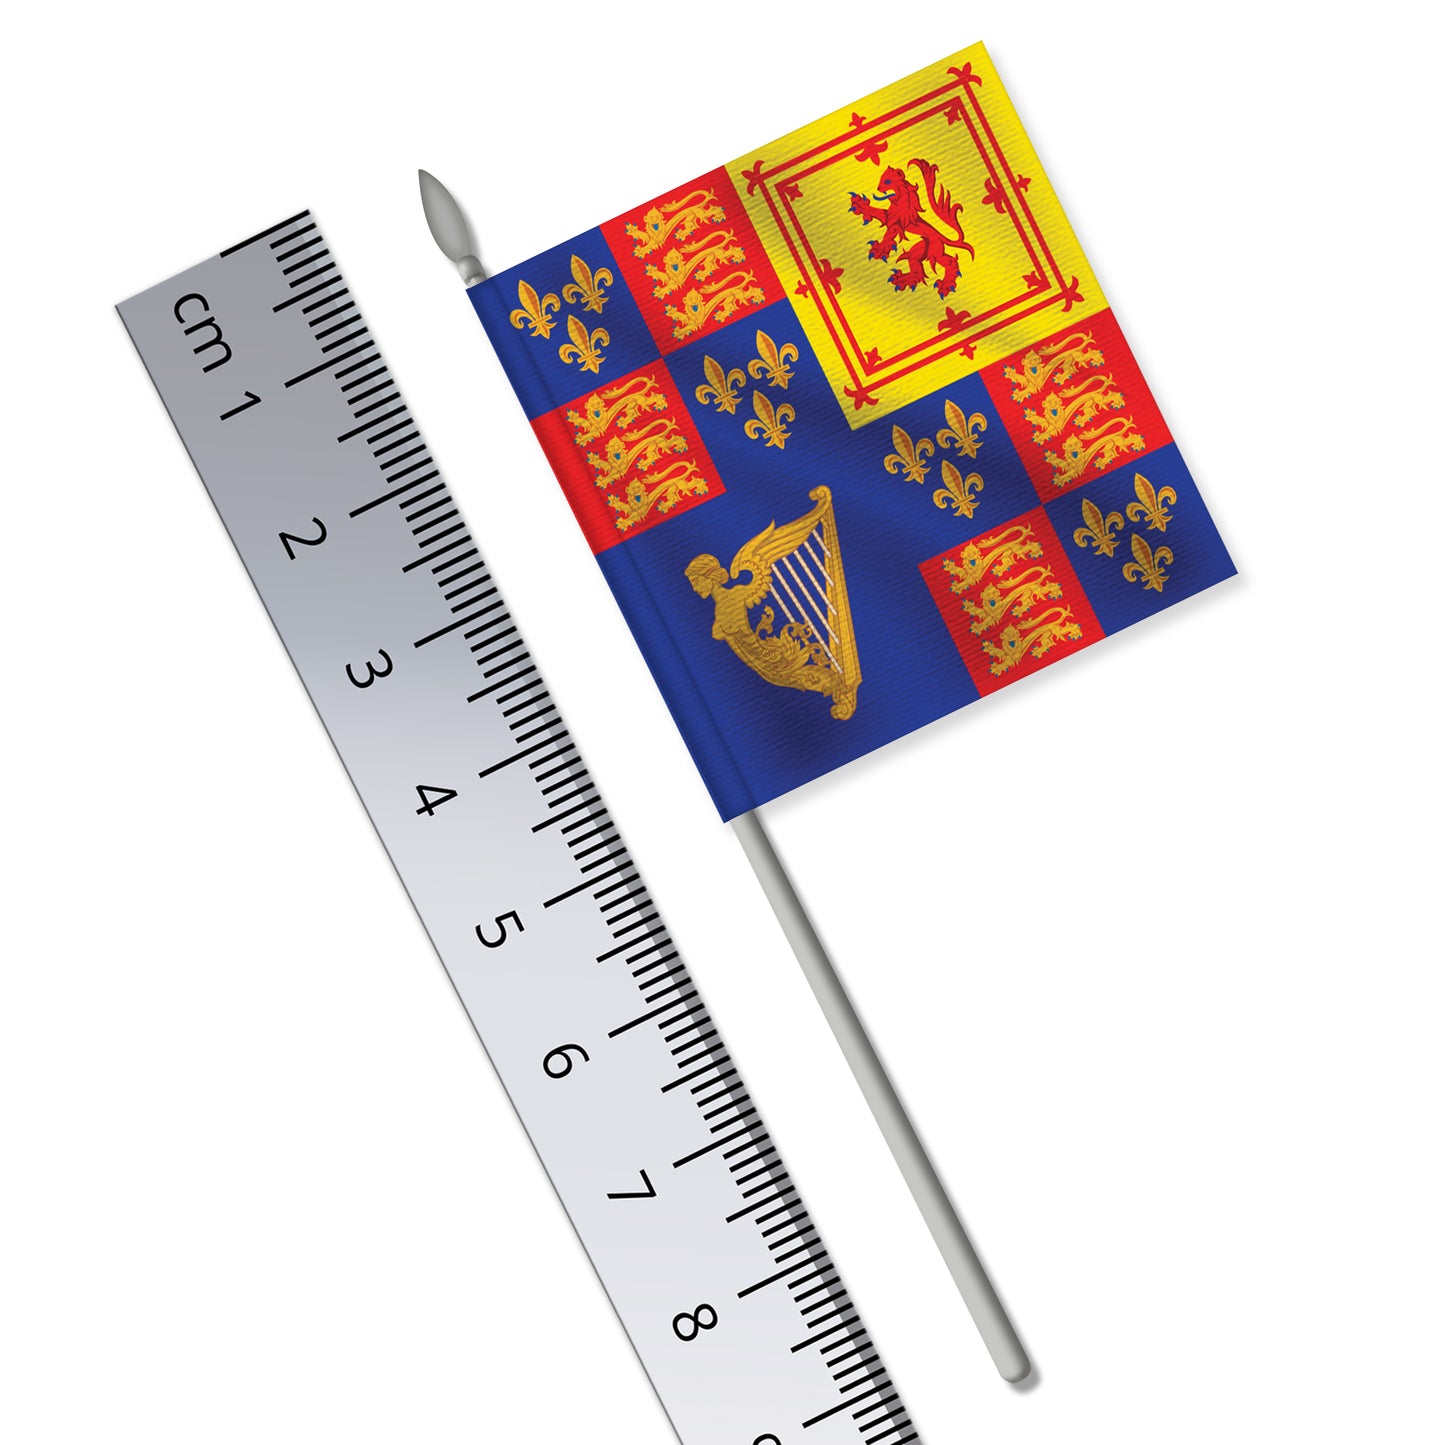 The Royal Banner of King Charles I (English Civil War, Royalist)